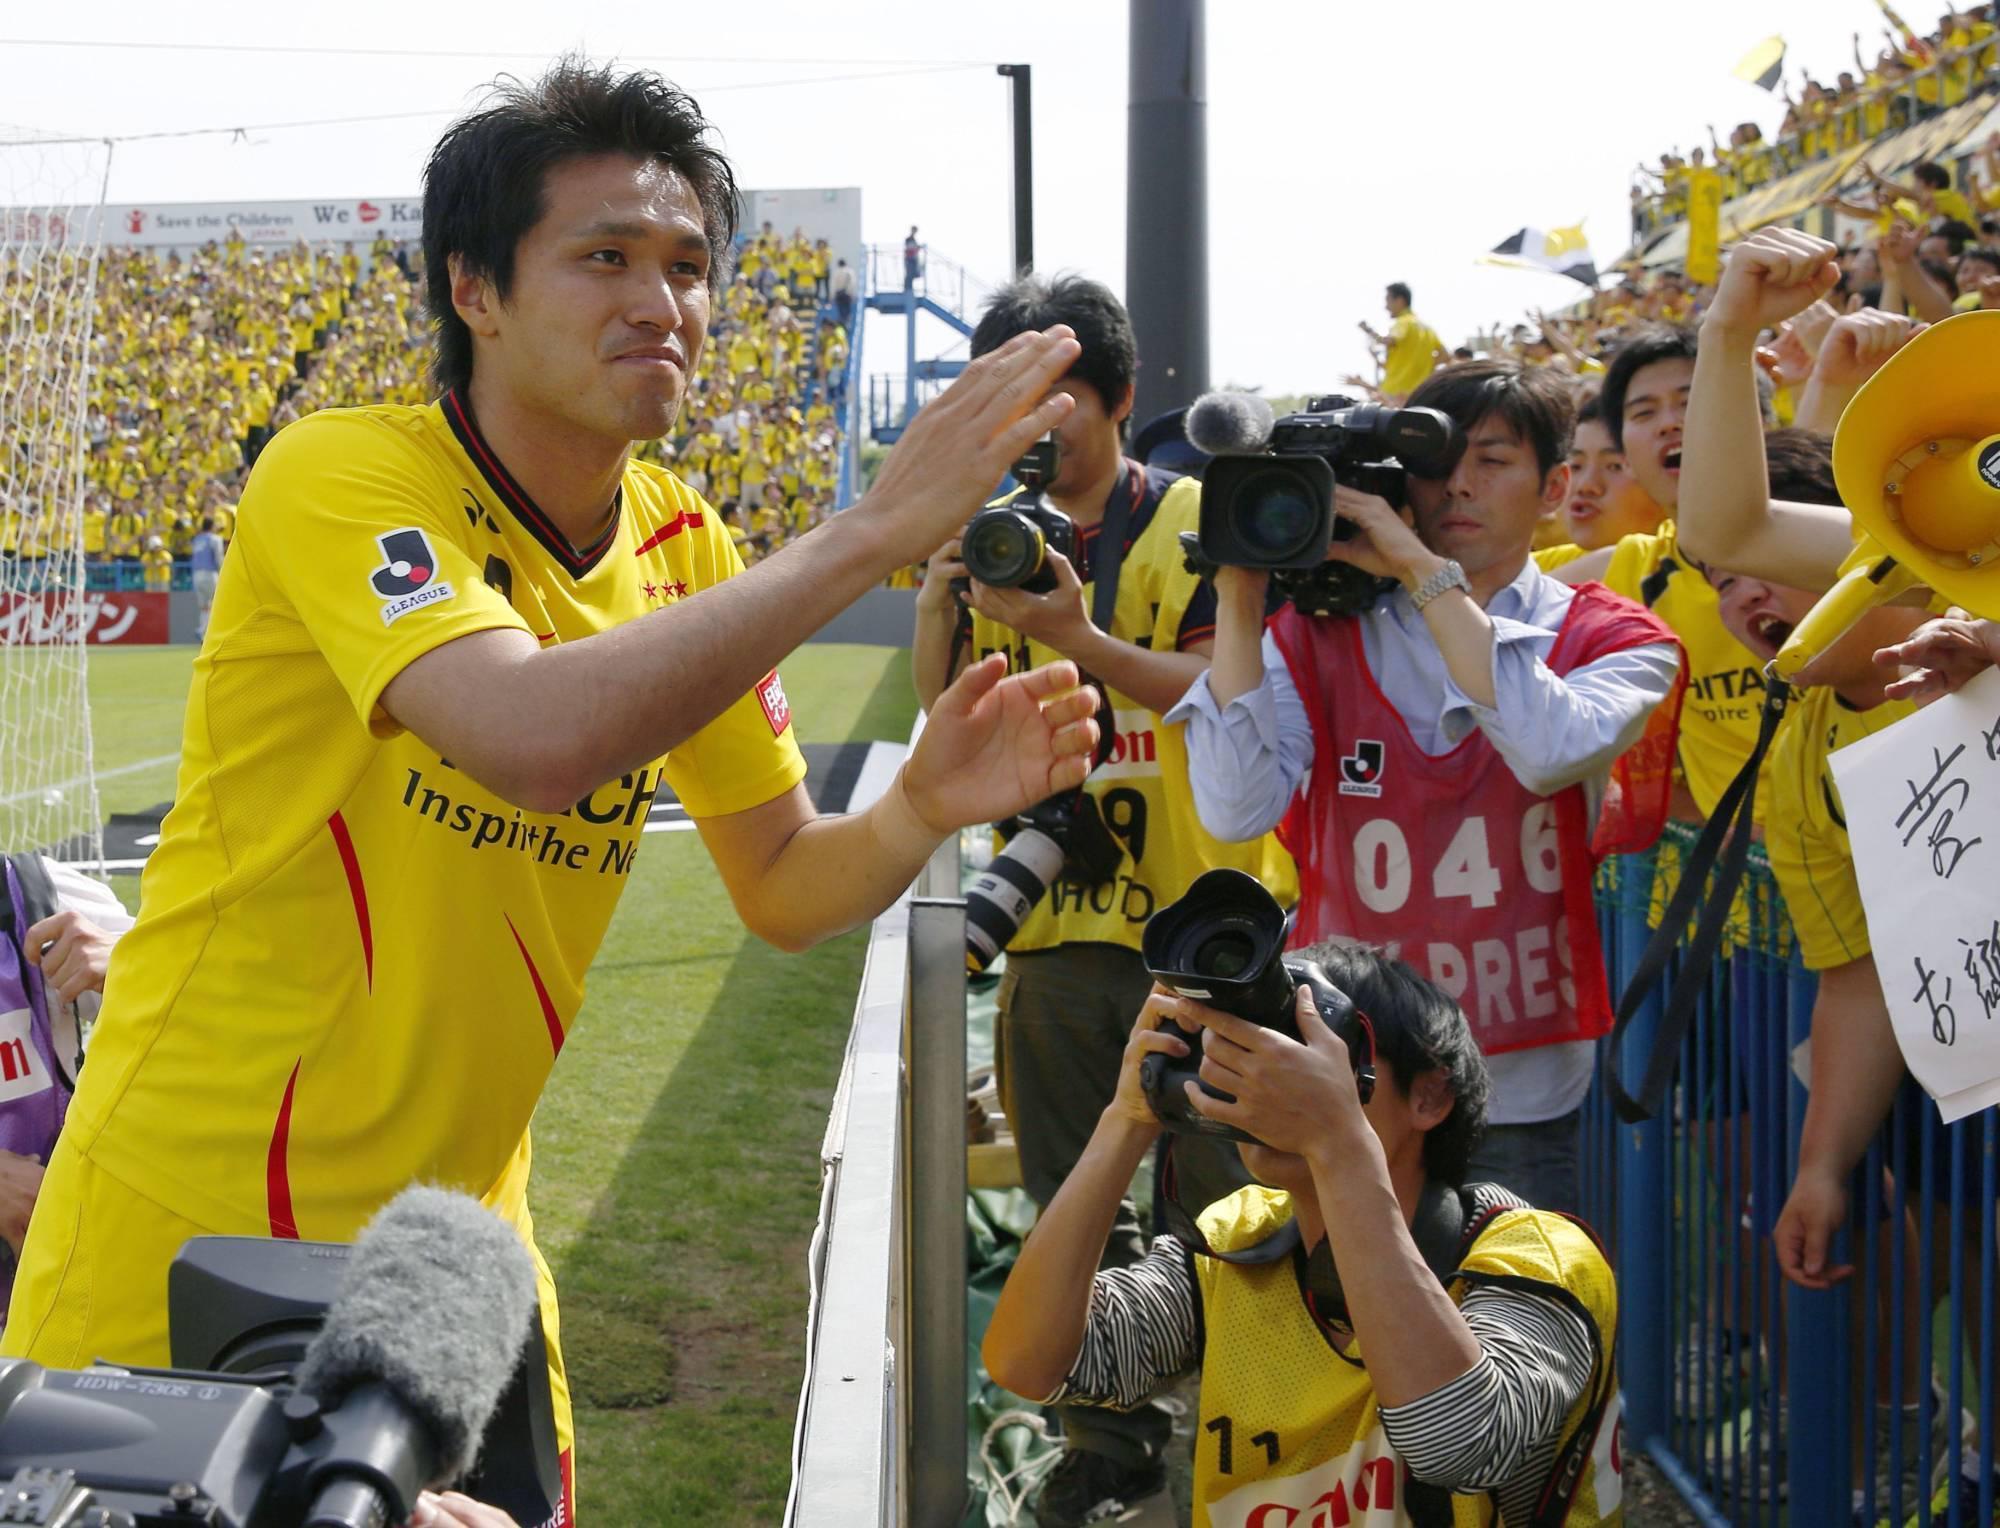 Futbol dünyası yasta Japon futbolcu 32 yaşında hayatını kaybetti